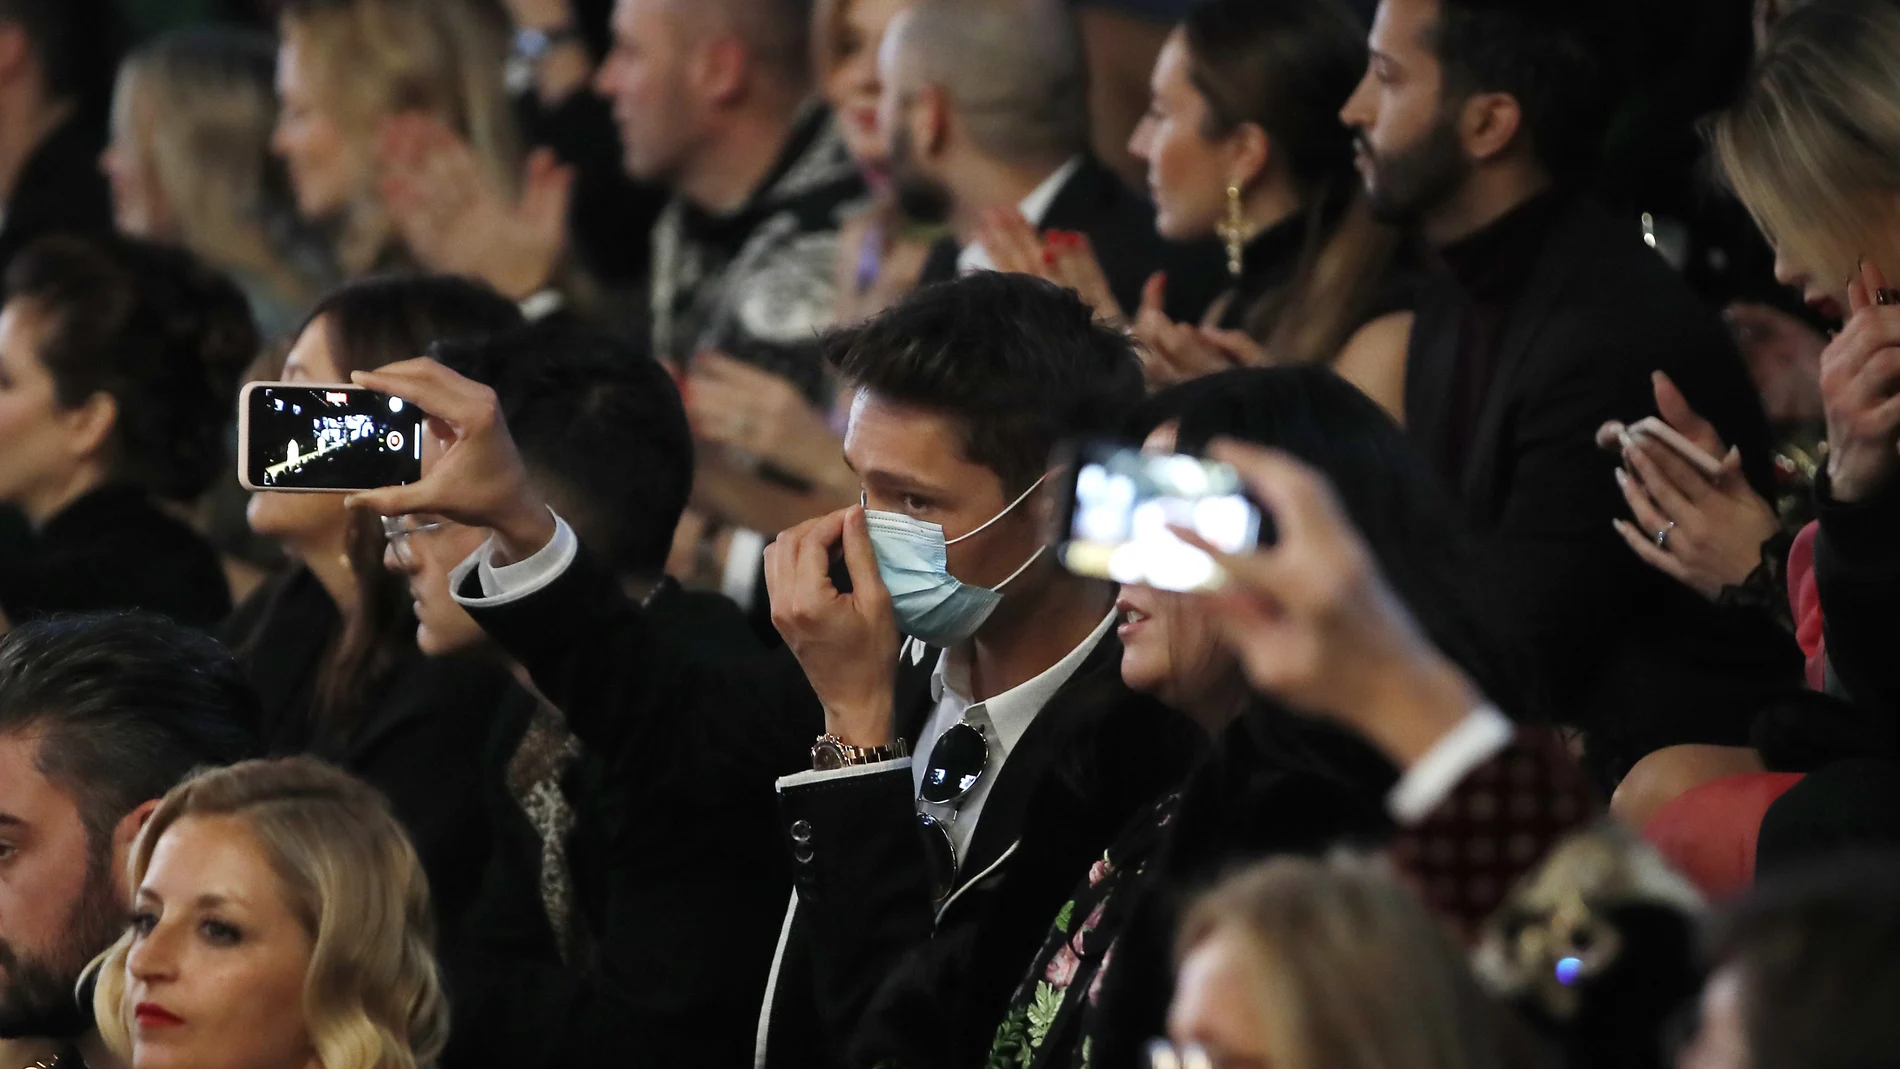 El coronavirus eclipsó ayer a la moda en Milán. El desfile de Dolce & Gabbana no se suspendió pero parte del público asistió provisto con mascarillas para evitar un posible contagio